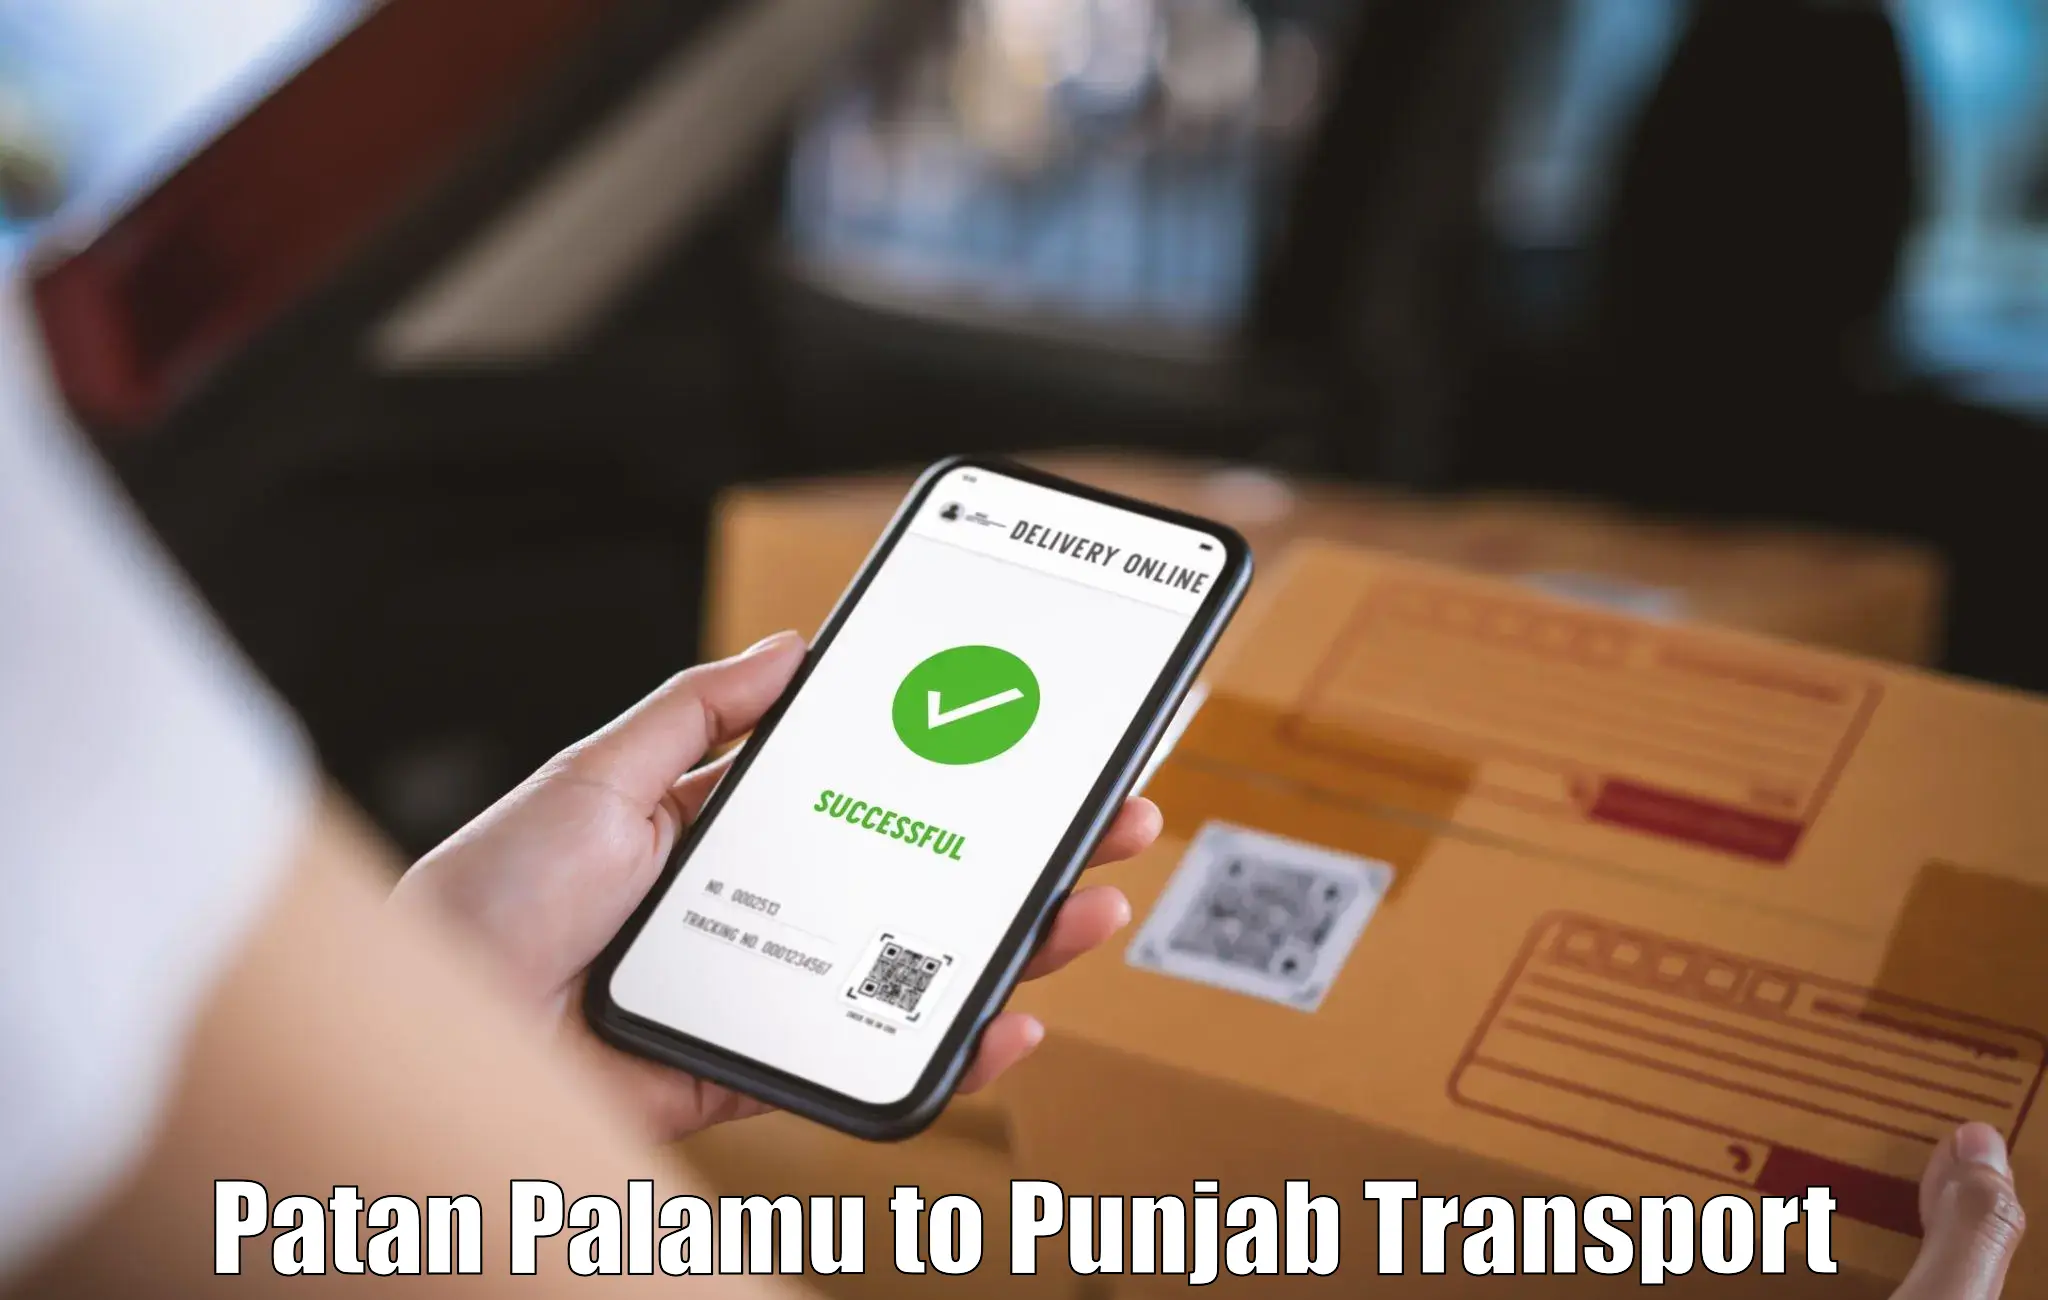 Road transport services Patan Palamu to Jalandhar